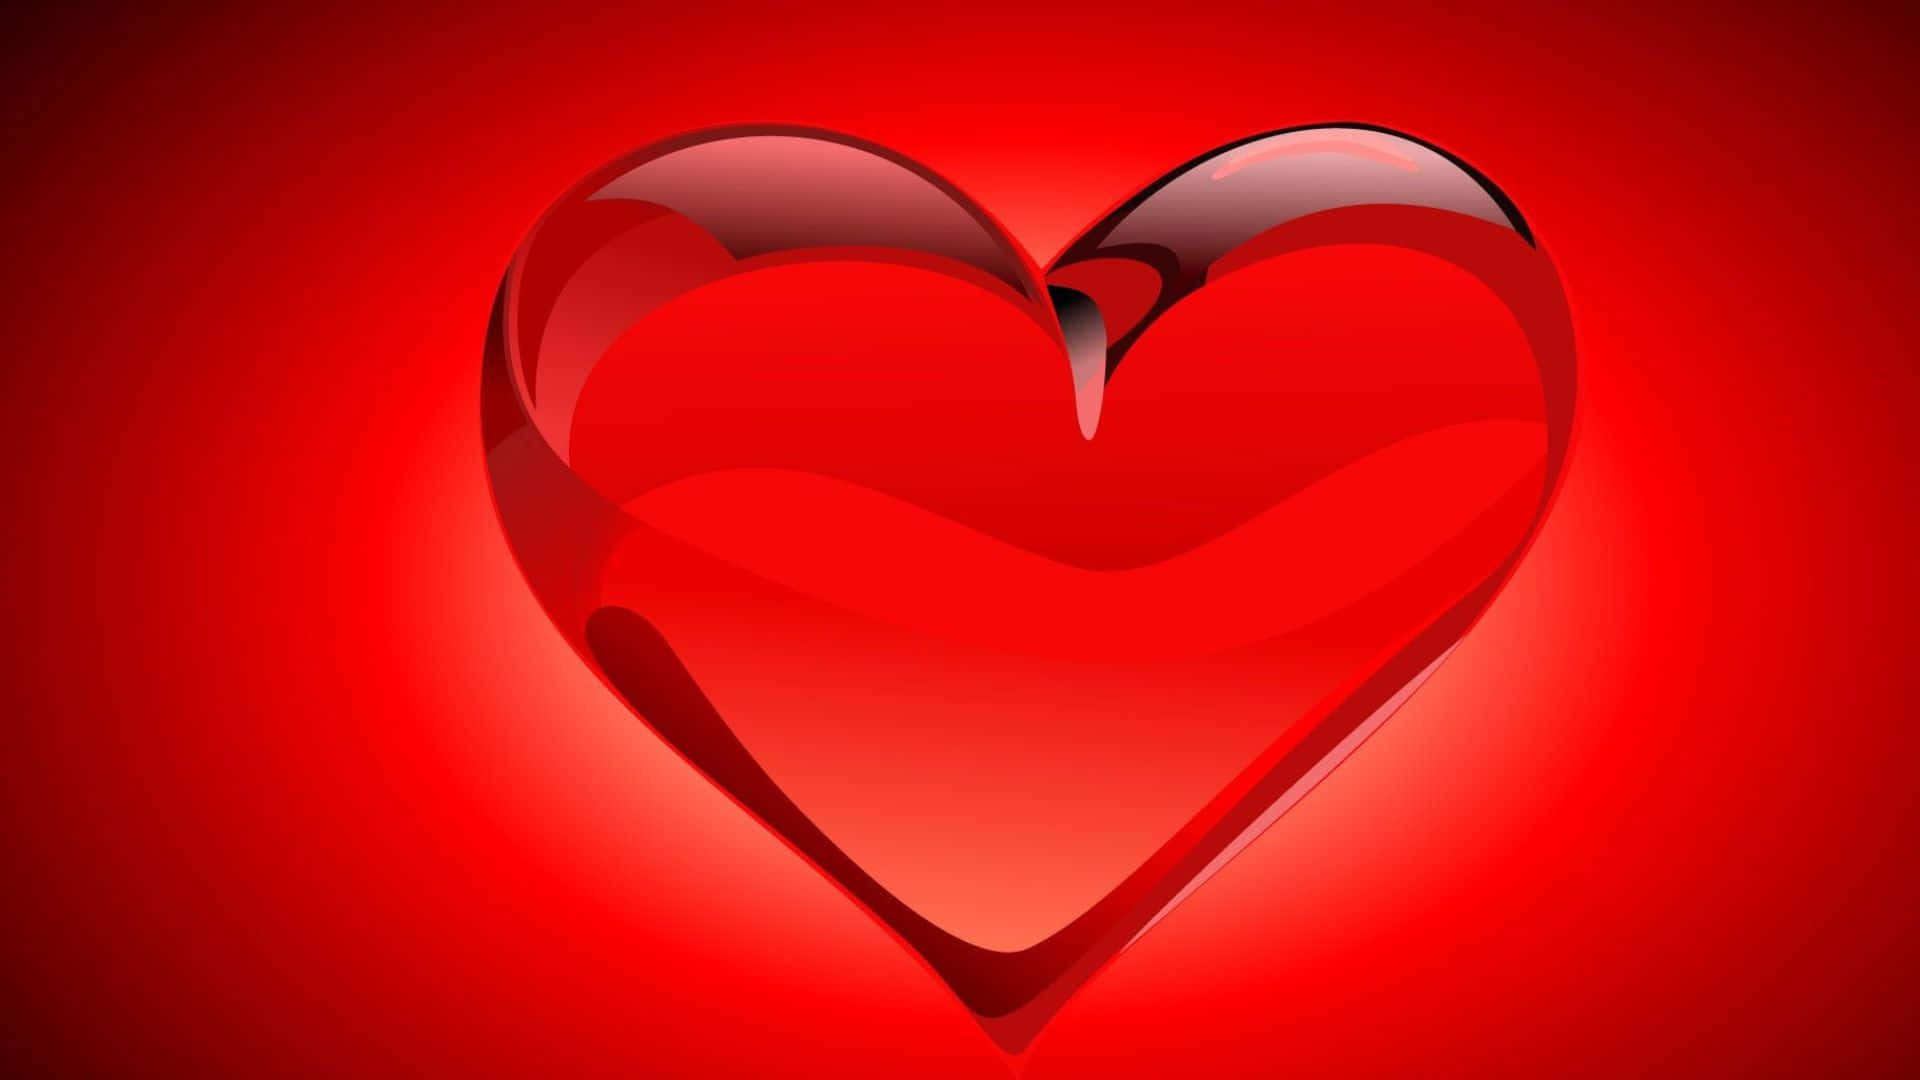 Unobjeto En Forma De Corazón Rojo Sobre Un Fondo Rojo